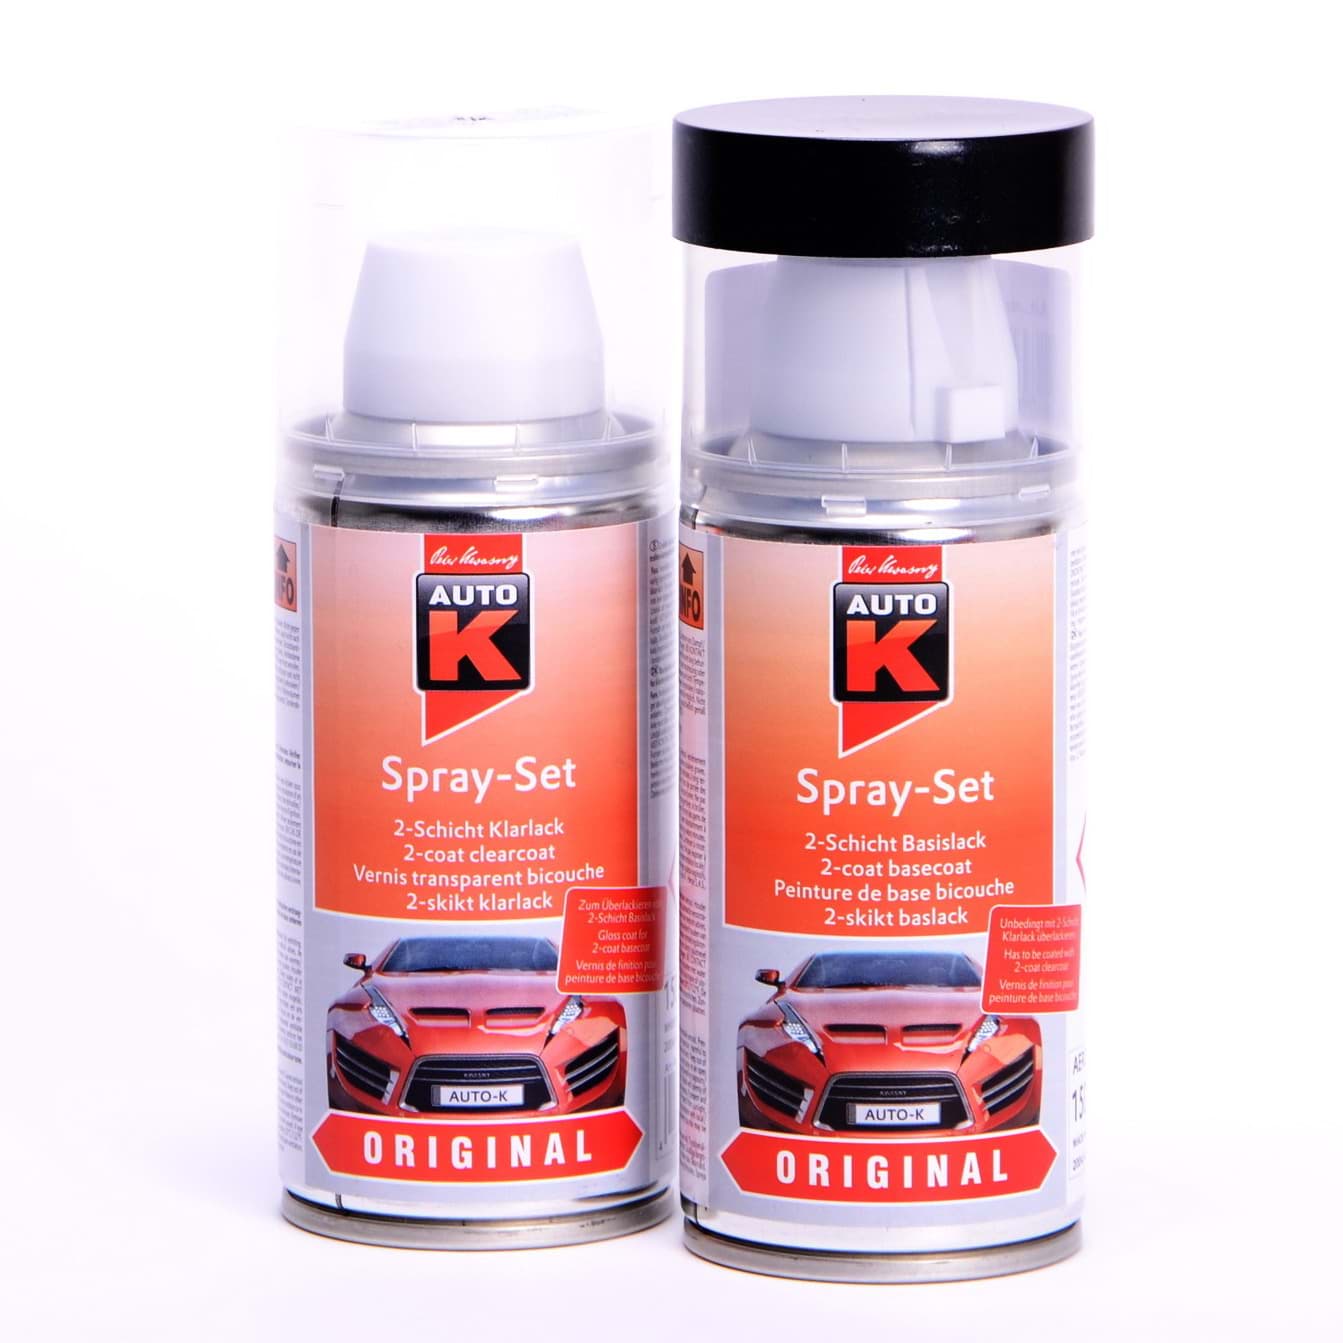 Auto-K Spray-Set Autolack für Opel 298 Mitternachtsschwarz met 21462 resmi